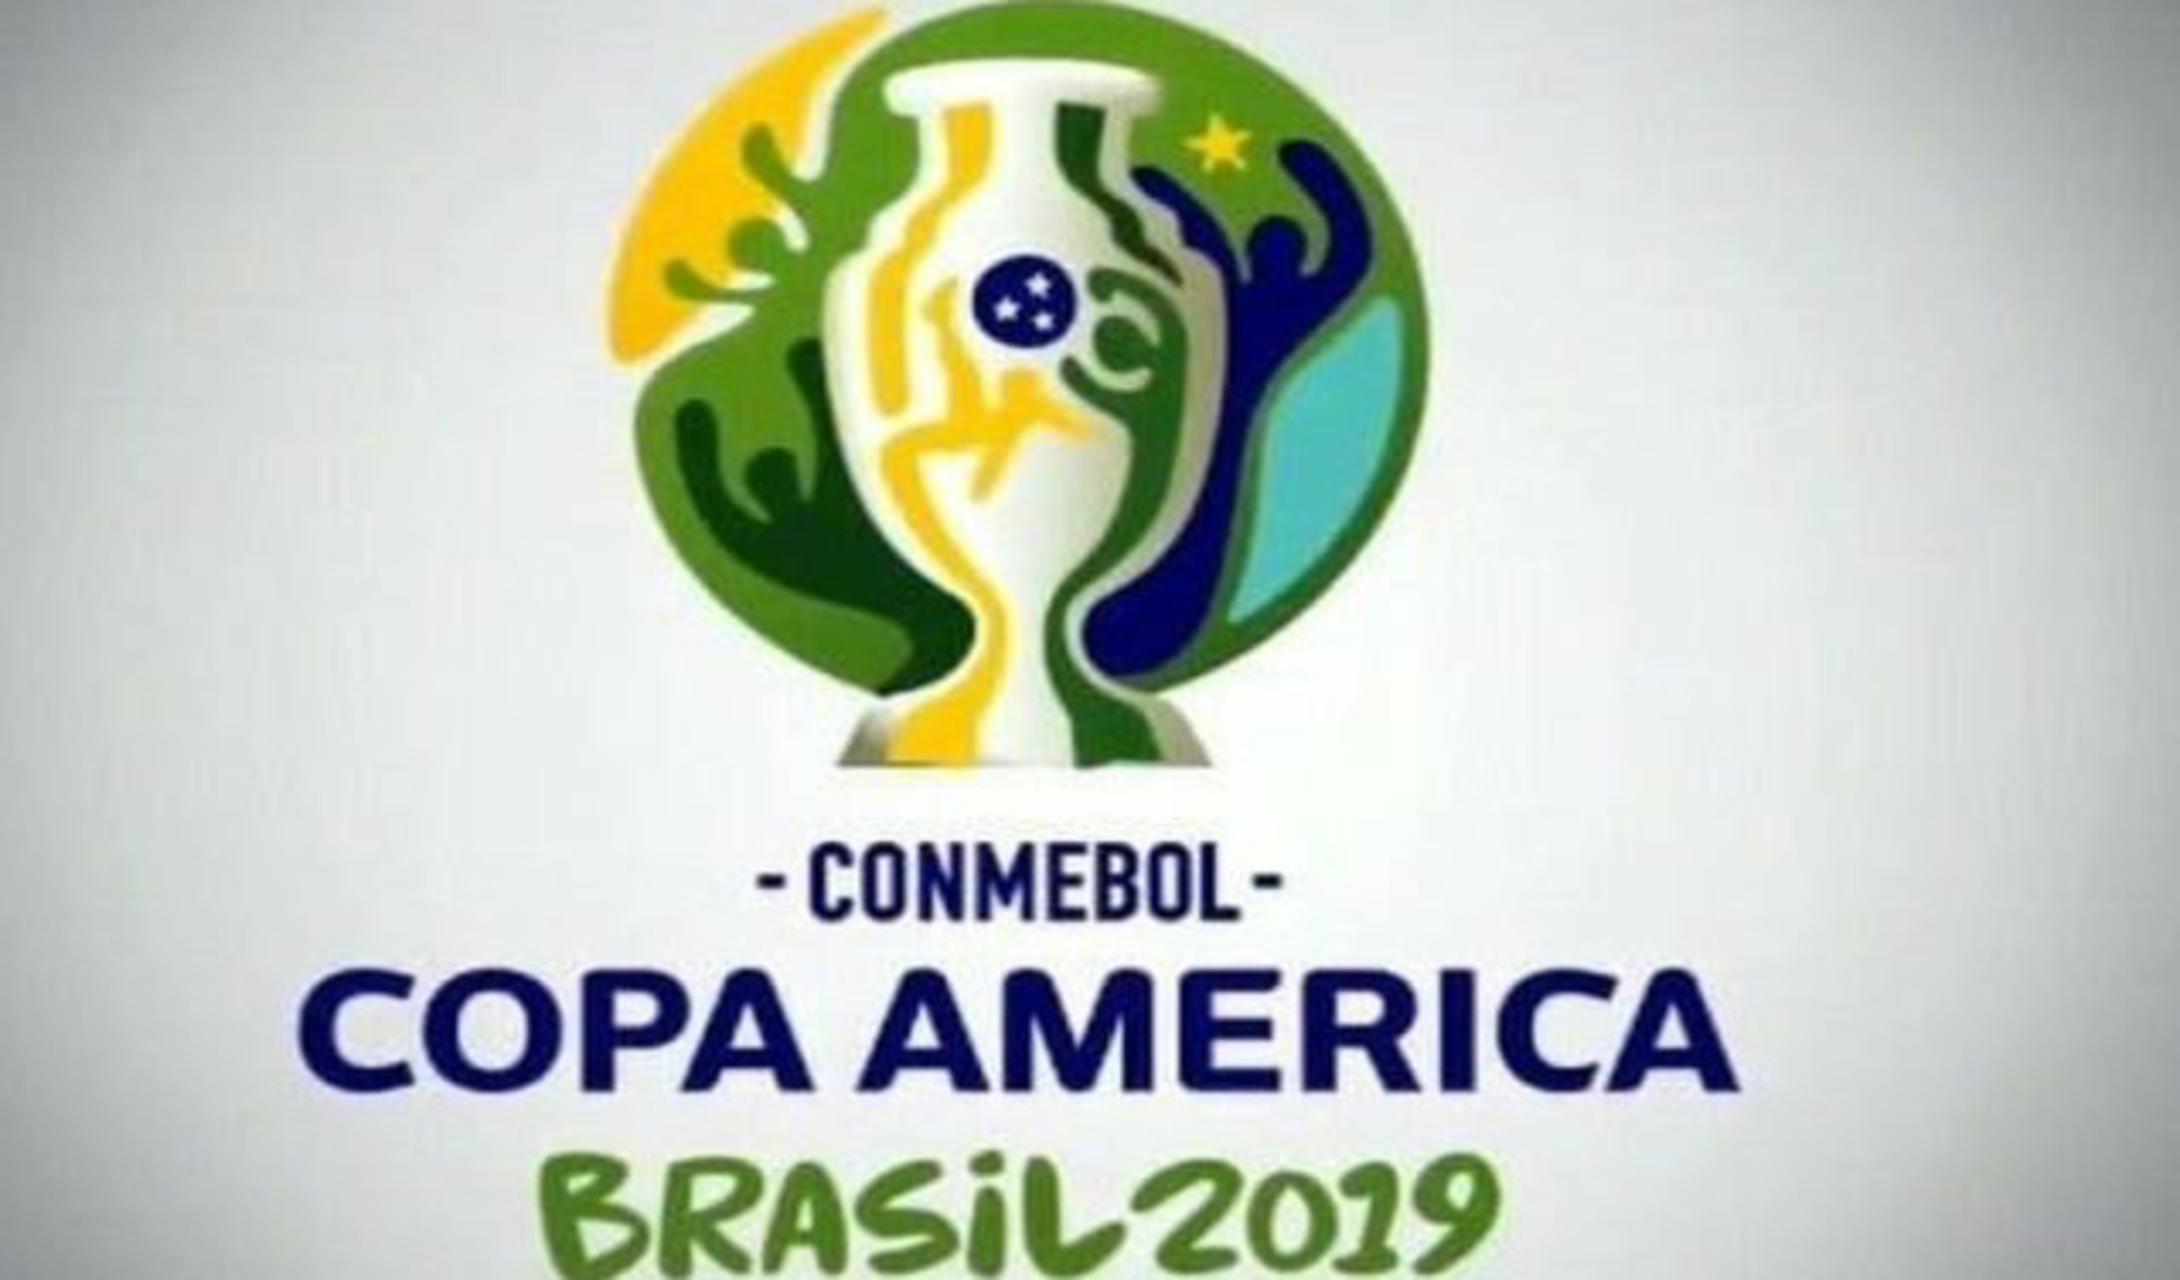 تعرّف على جدول مباريات الجولة الأولى من بطولة Copa america 2019